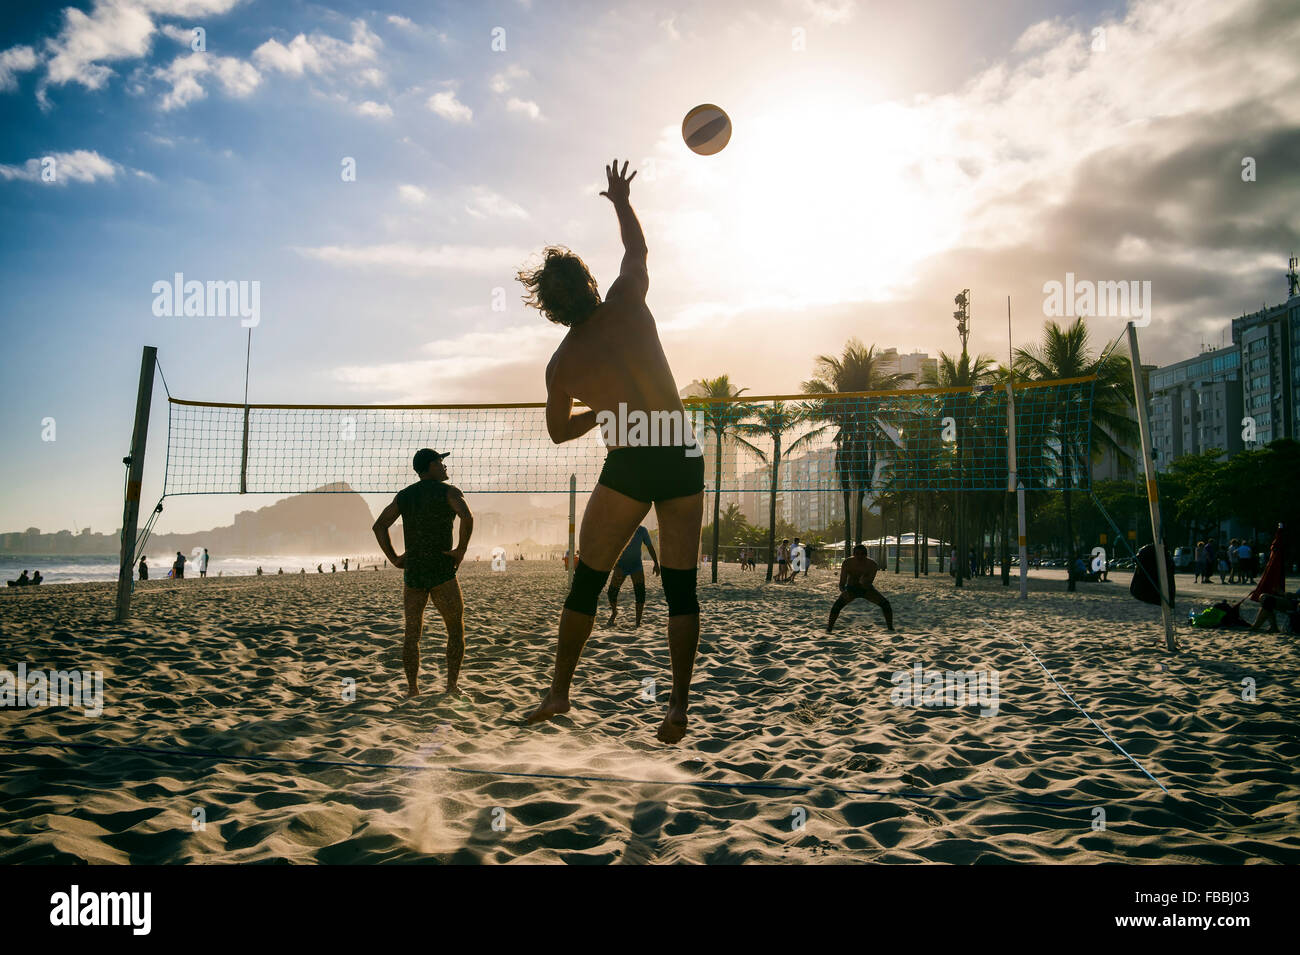 RIO DE JANEIRO, Brésil - 30 octobre 2015 : un groupe de jeunes Brésiliens jouer jeu de volley-ball au coucher du soleil sur la plage de Copacabana. Banque D'Images